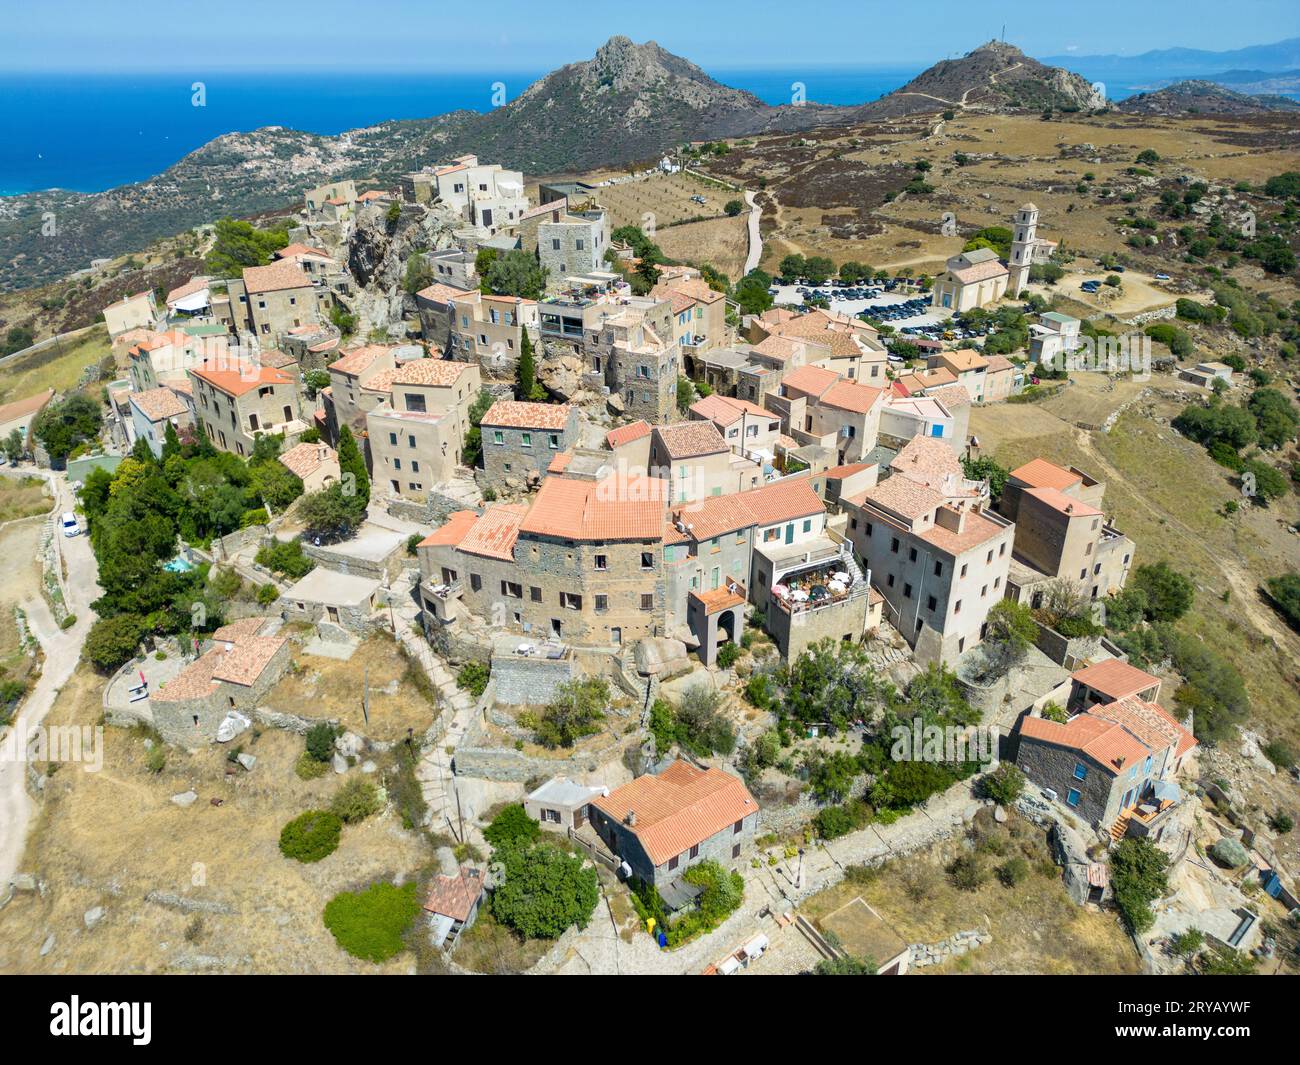 Vista aérea del pueblo de Pietralta en la isla de Córcega, Francia Foto de stock